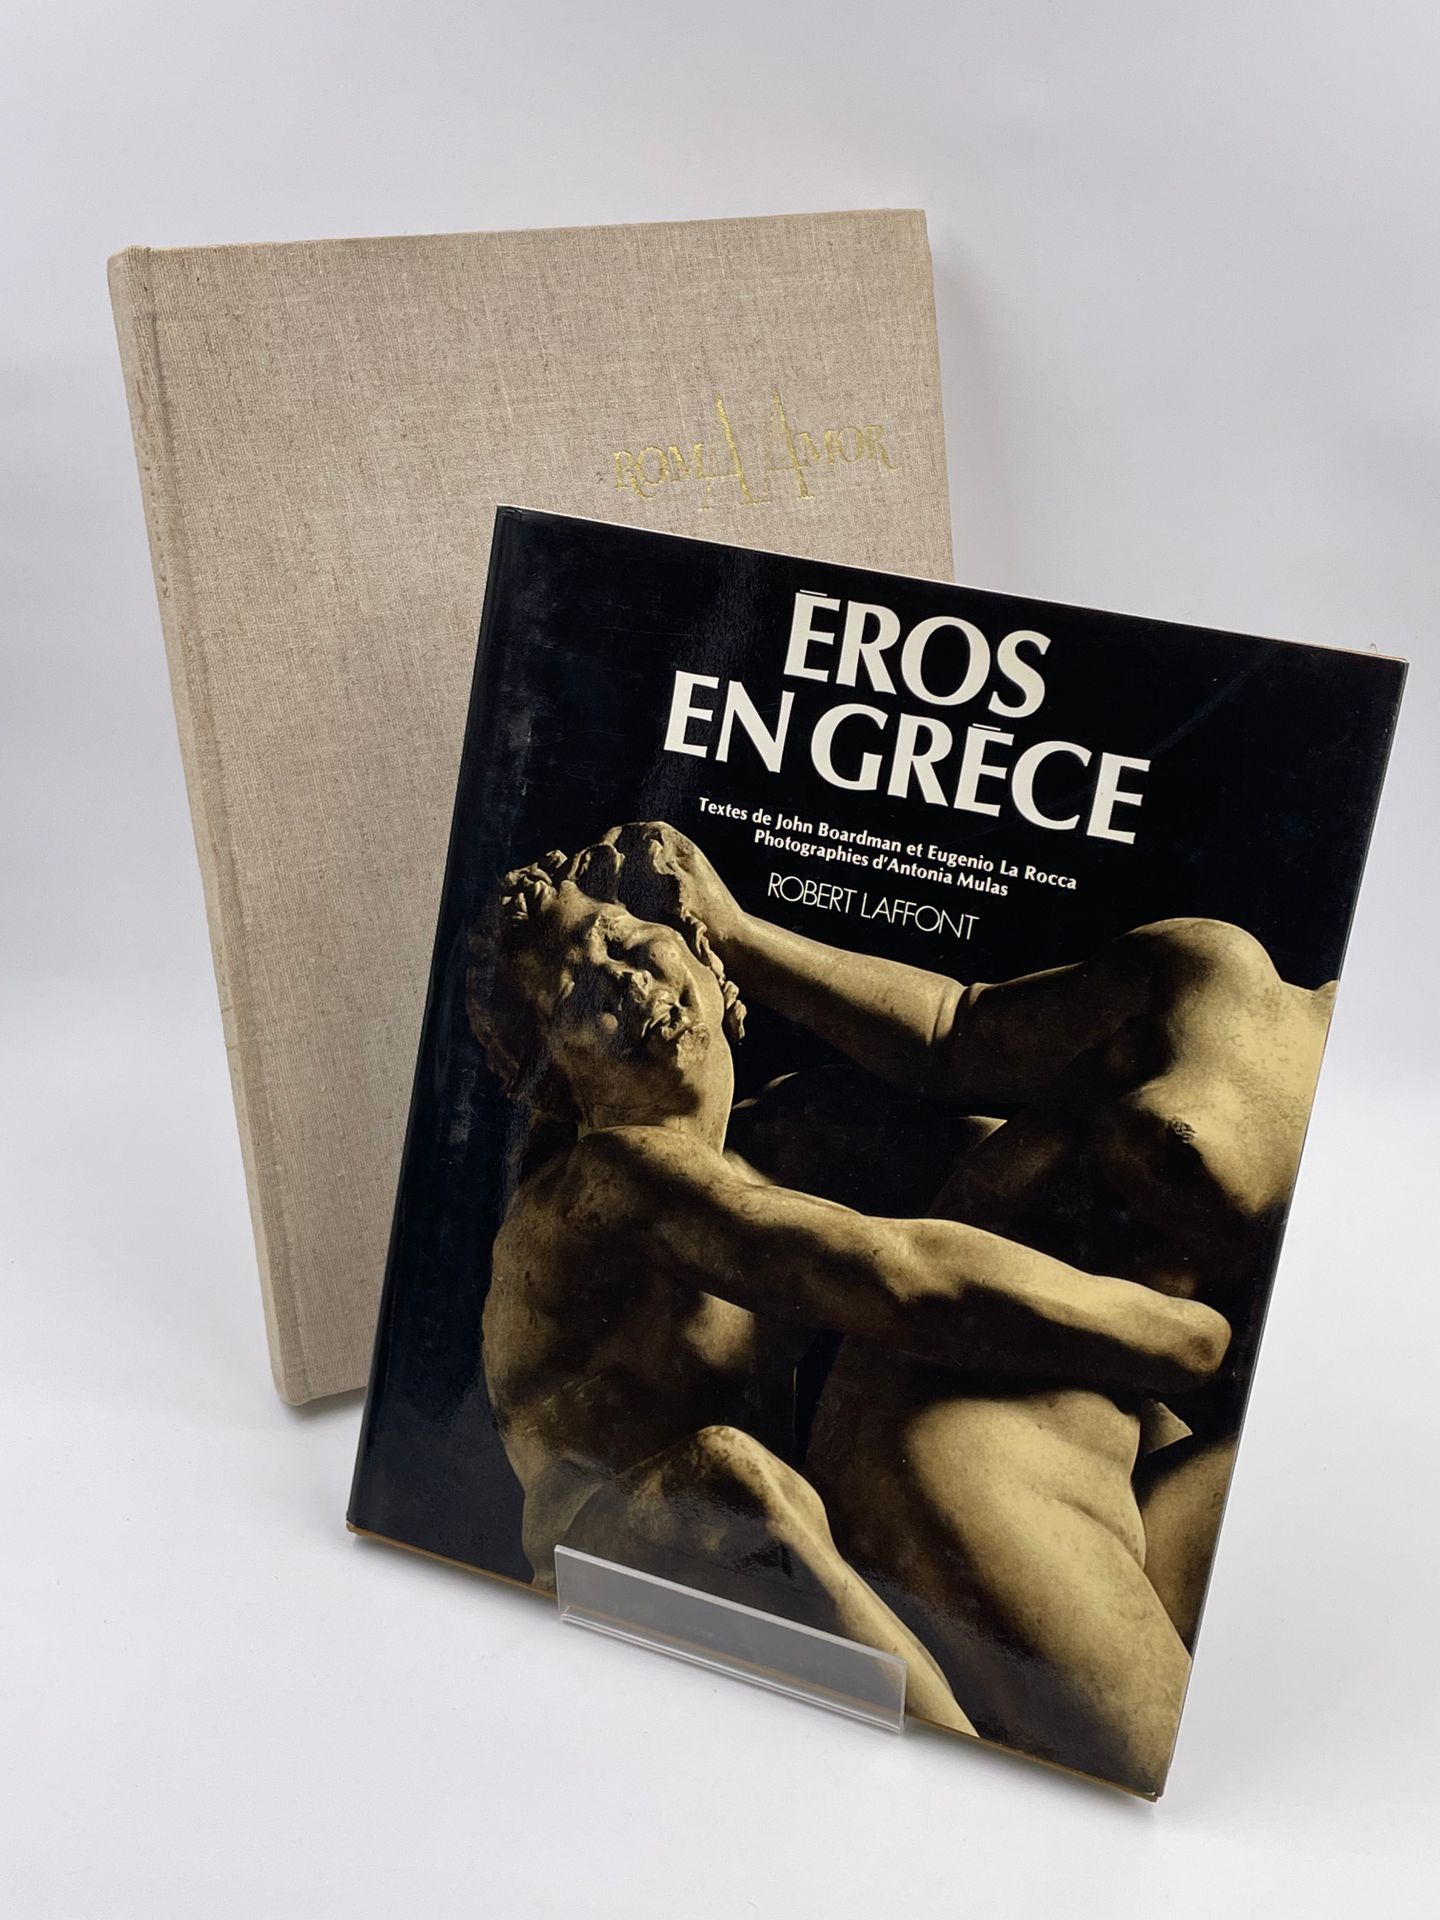 Null 2 Volumes : 

- "EROS IN GREECE",J.Boardman, Eugenio La Rocca, Phot.Antonia&hellip;